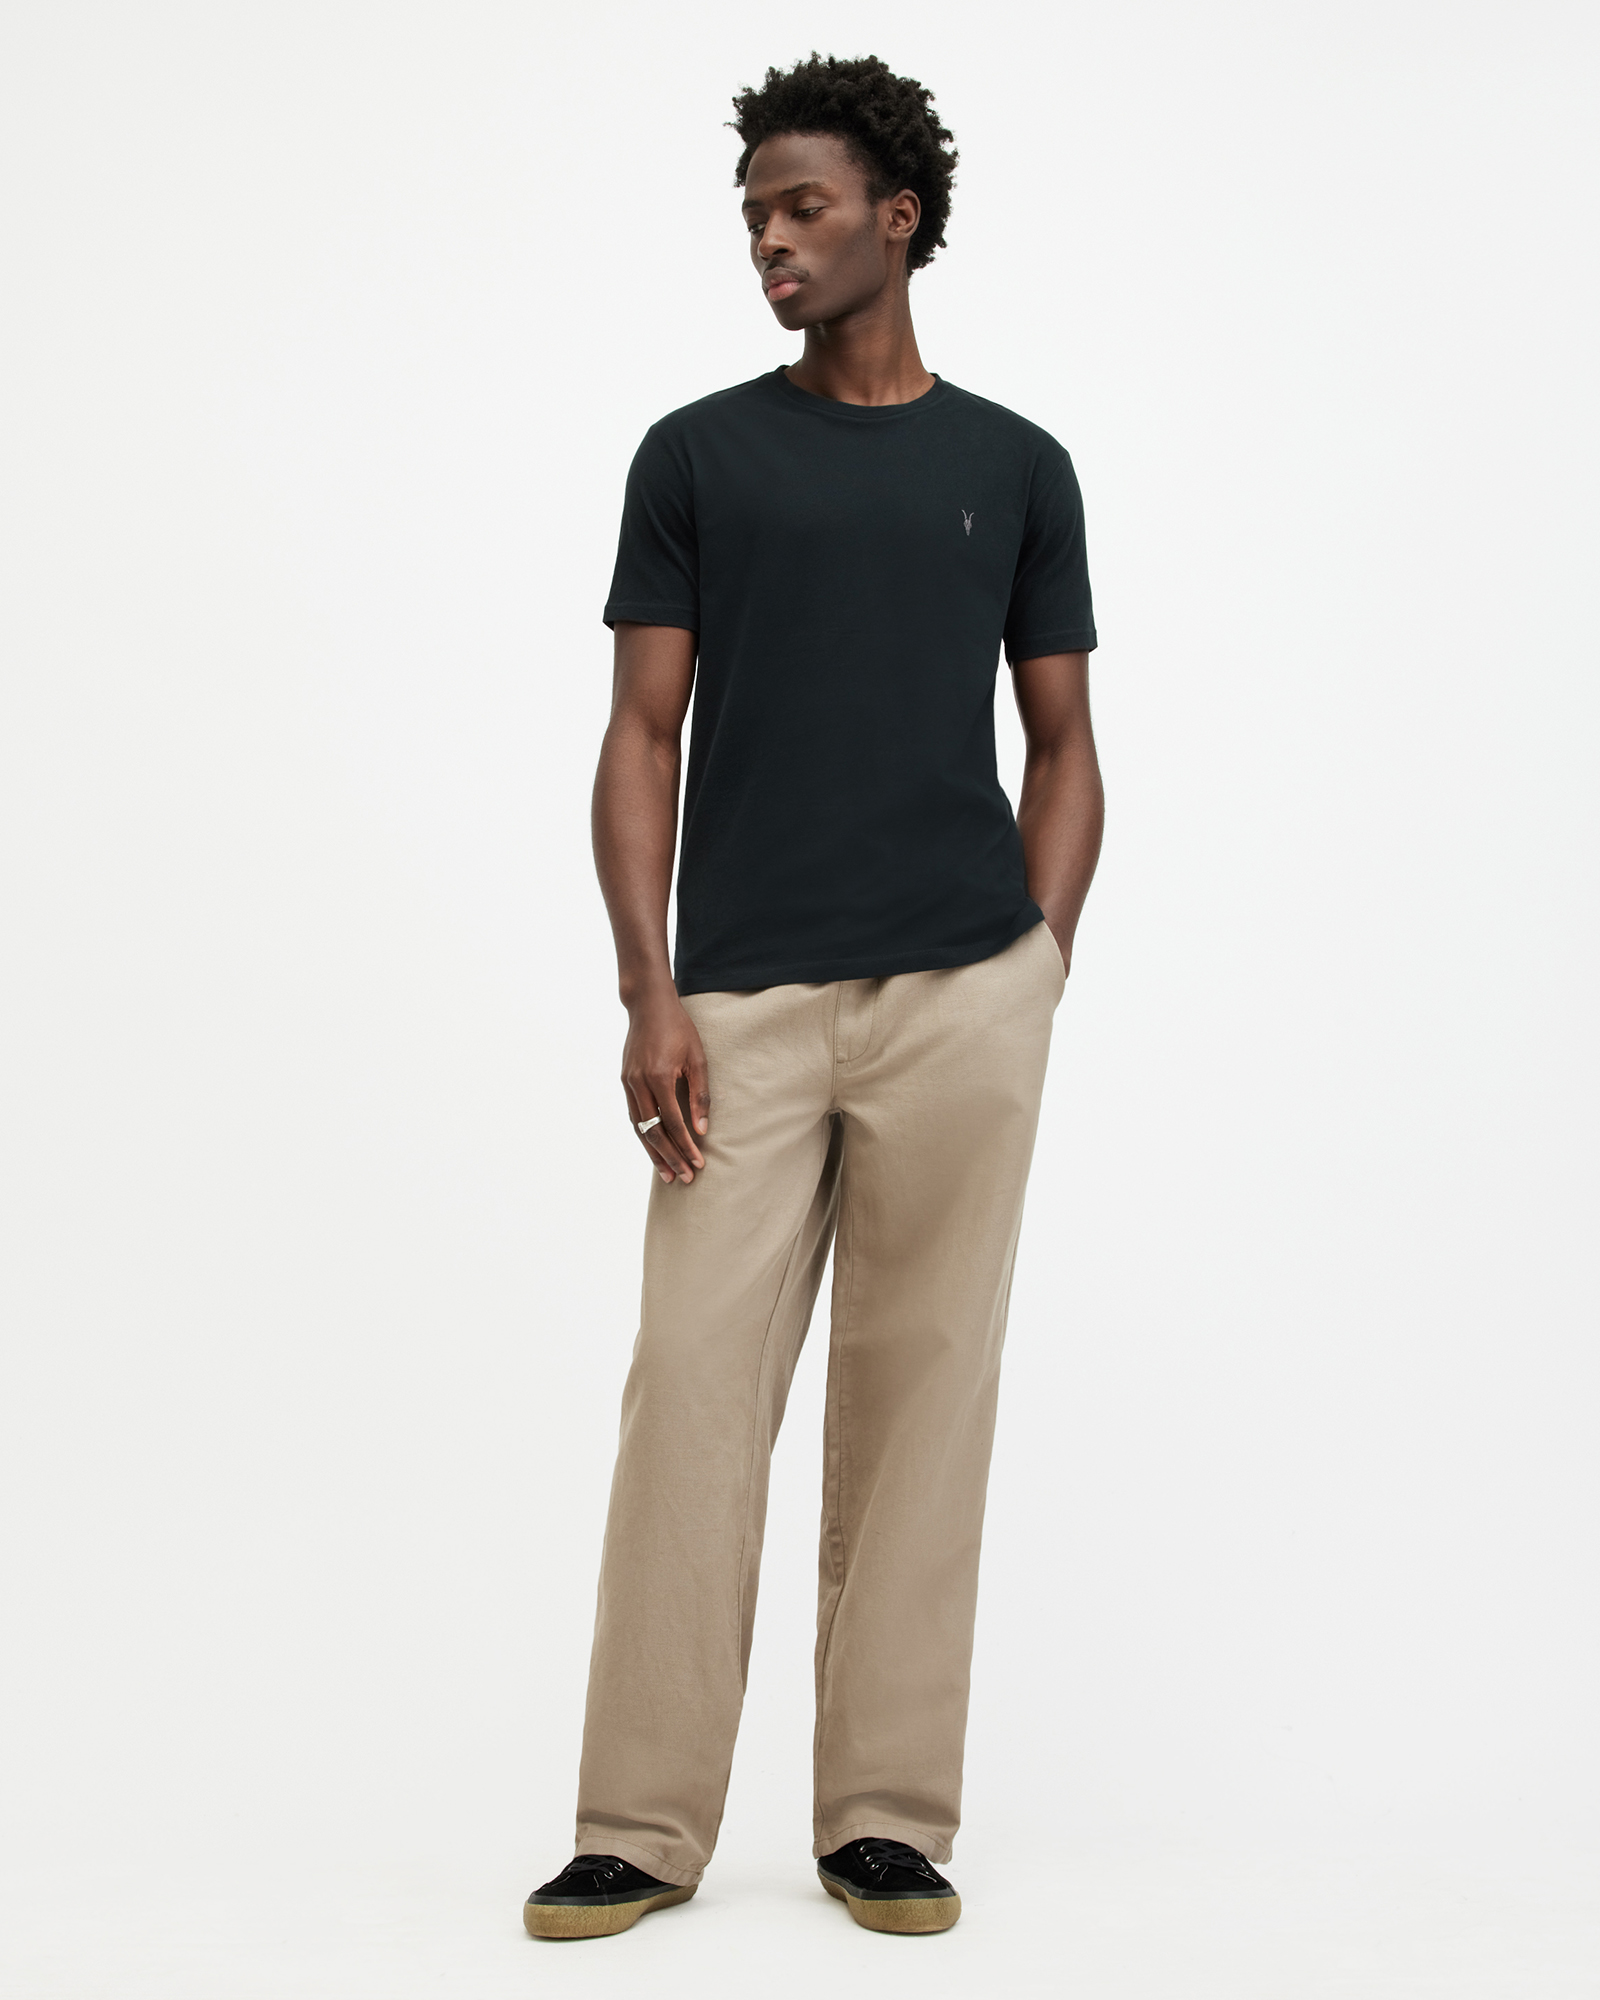 AllSaints Men's Cotton Slim Fit Brace Tonic Short Sleeve Crew T-Shirt, Black, Size: S